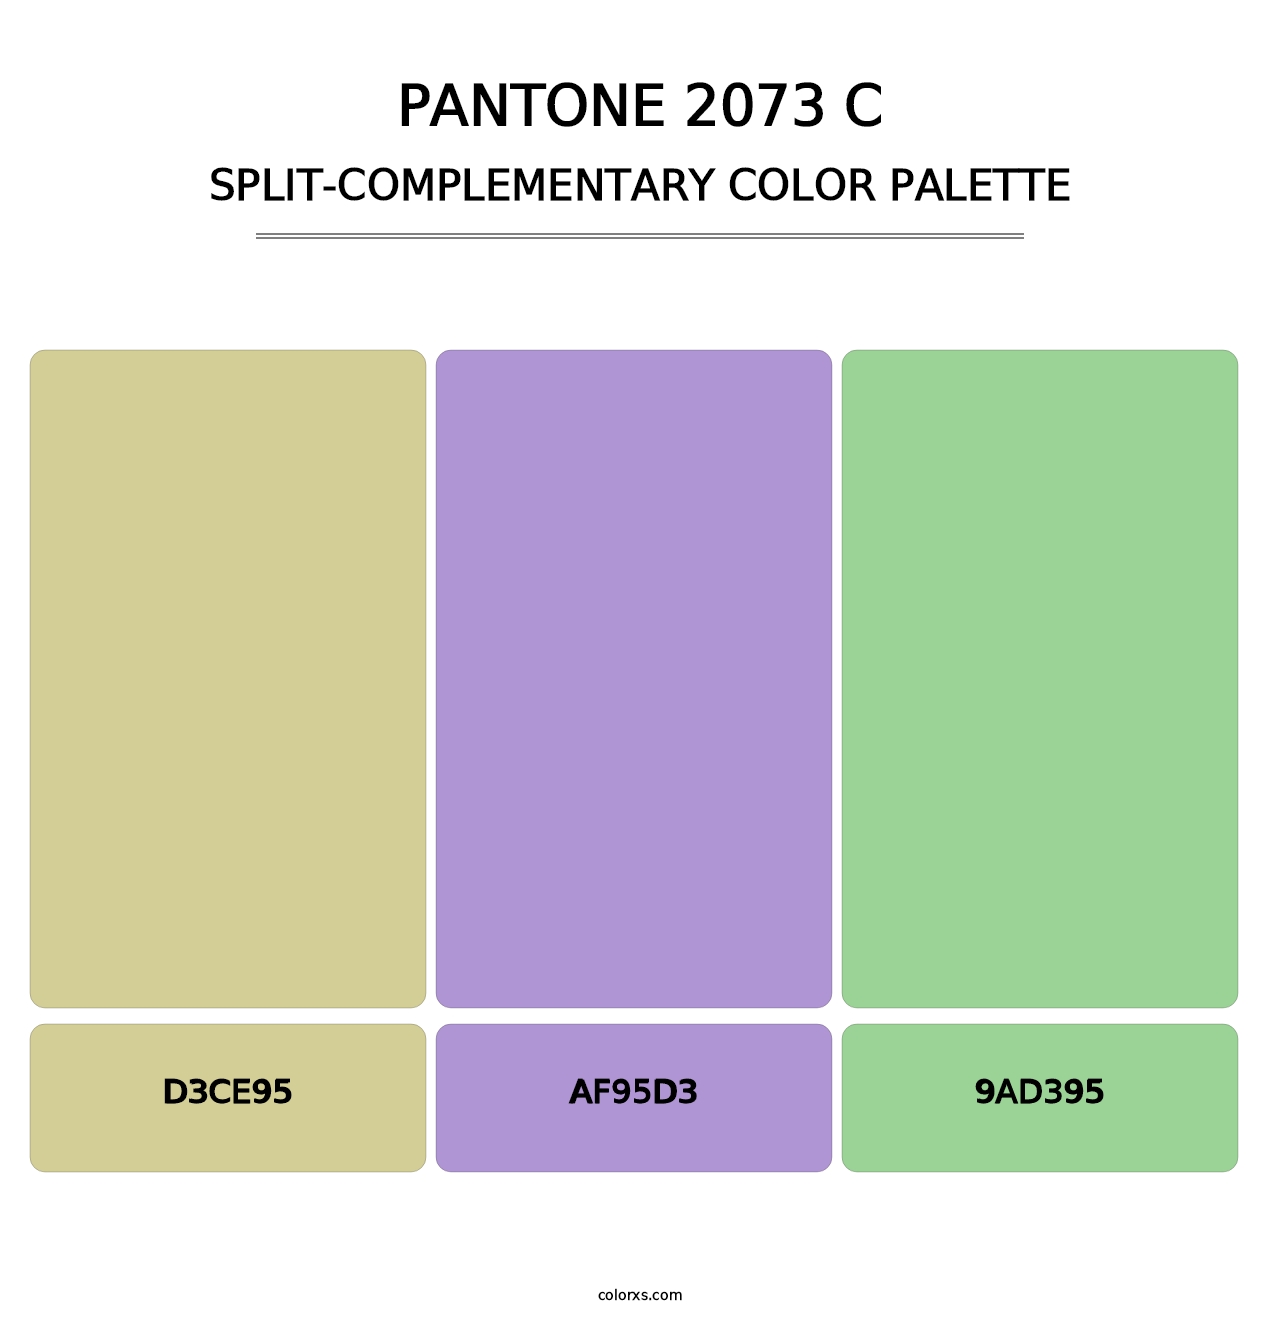 PANTONE 2073 C - Split-Complementary Color Palette